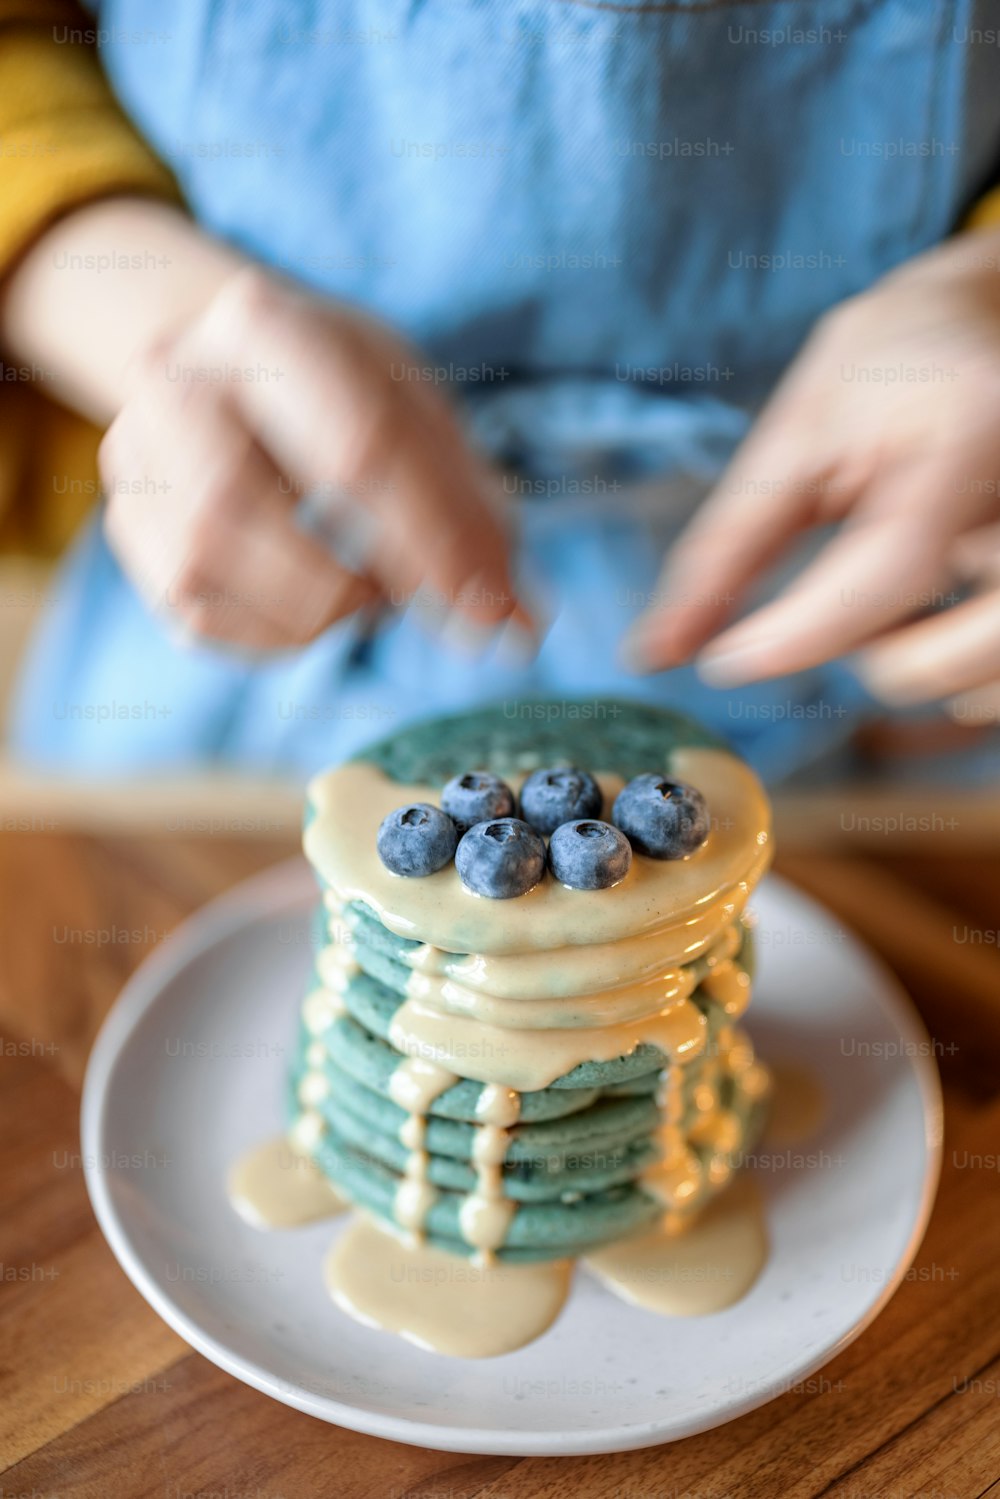 La donna in grembiule blu decora le frittelle americane blu con mirtilli versati con salsa al caramello sul tavolo di legno. Cibo gustoso fatto in casa. Celebrazione del Carnevale.